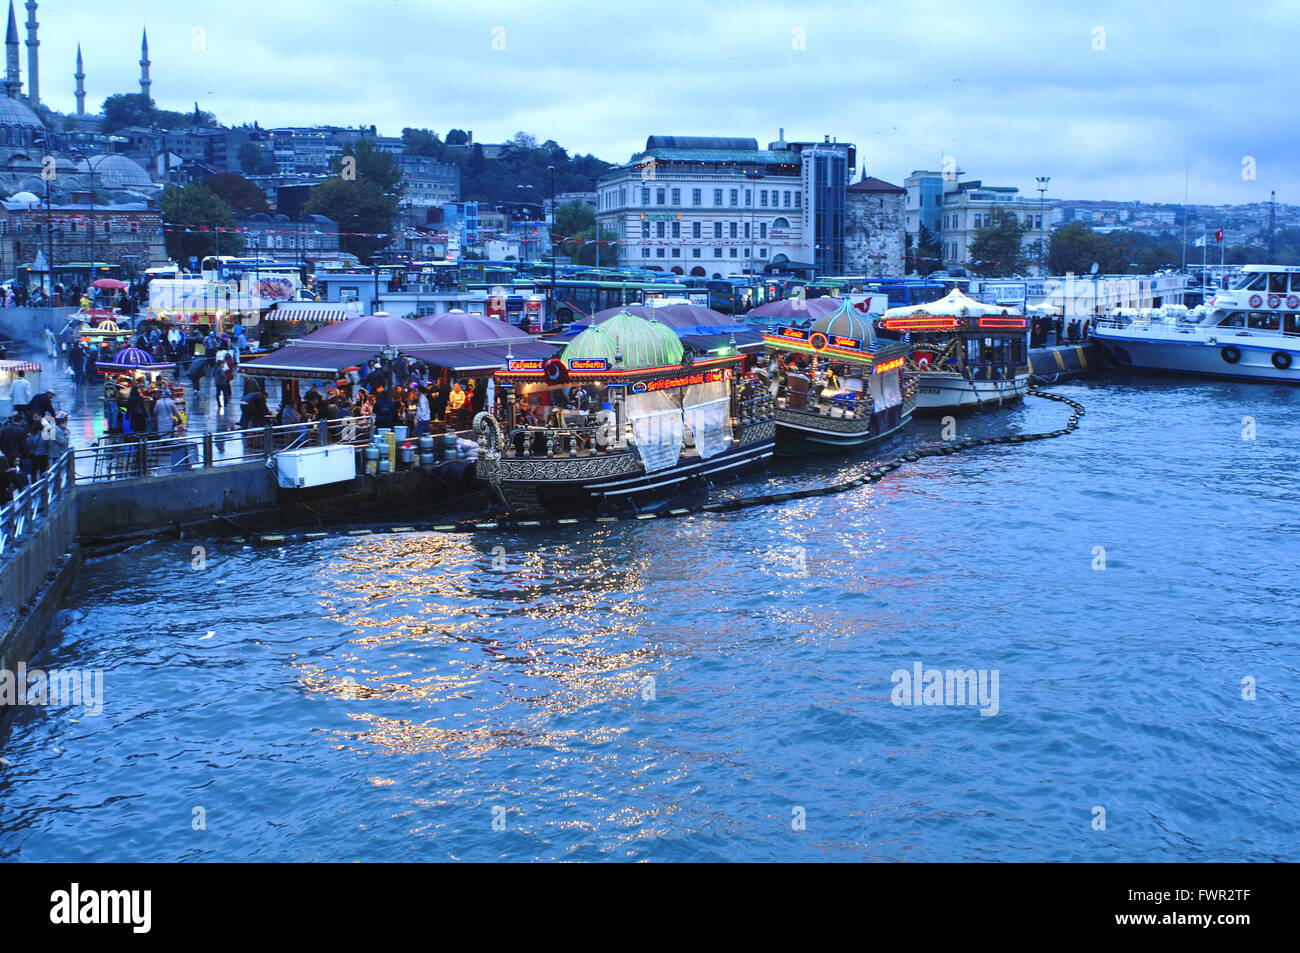 Turchia, Istanbul, Eminoenue, Golden Horn, decorata e dorata barca ristorante vicino al Ponte di Galata Foto Stock